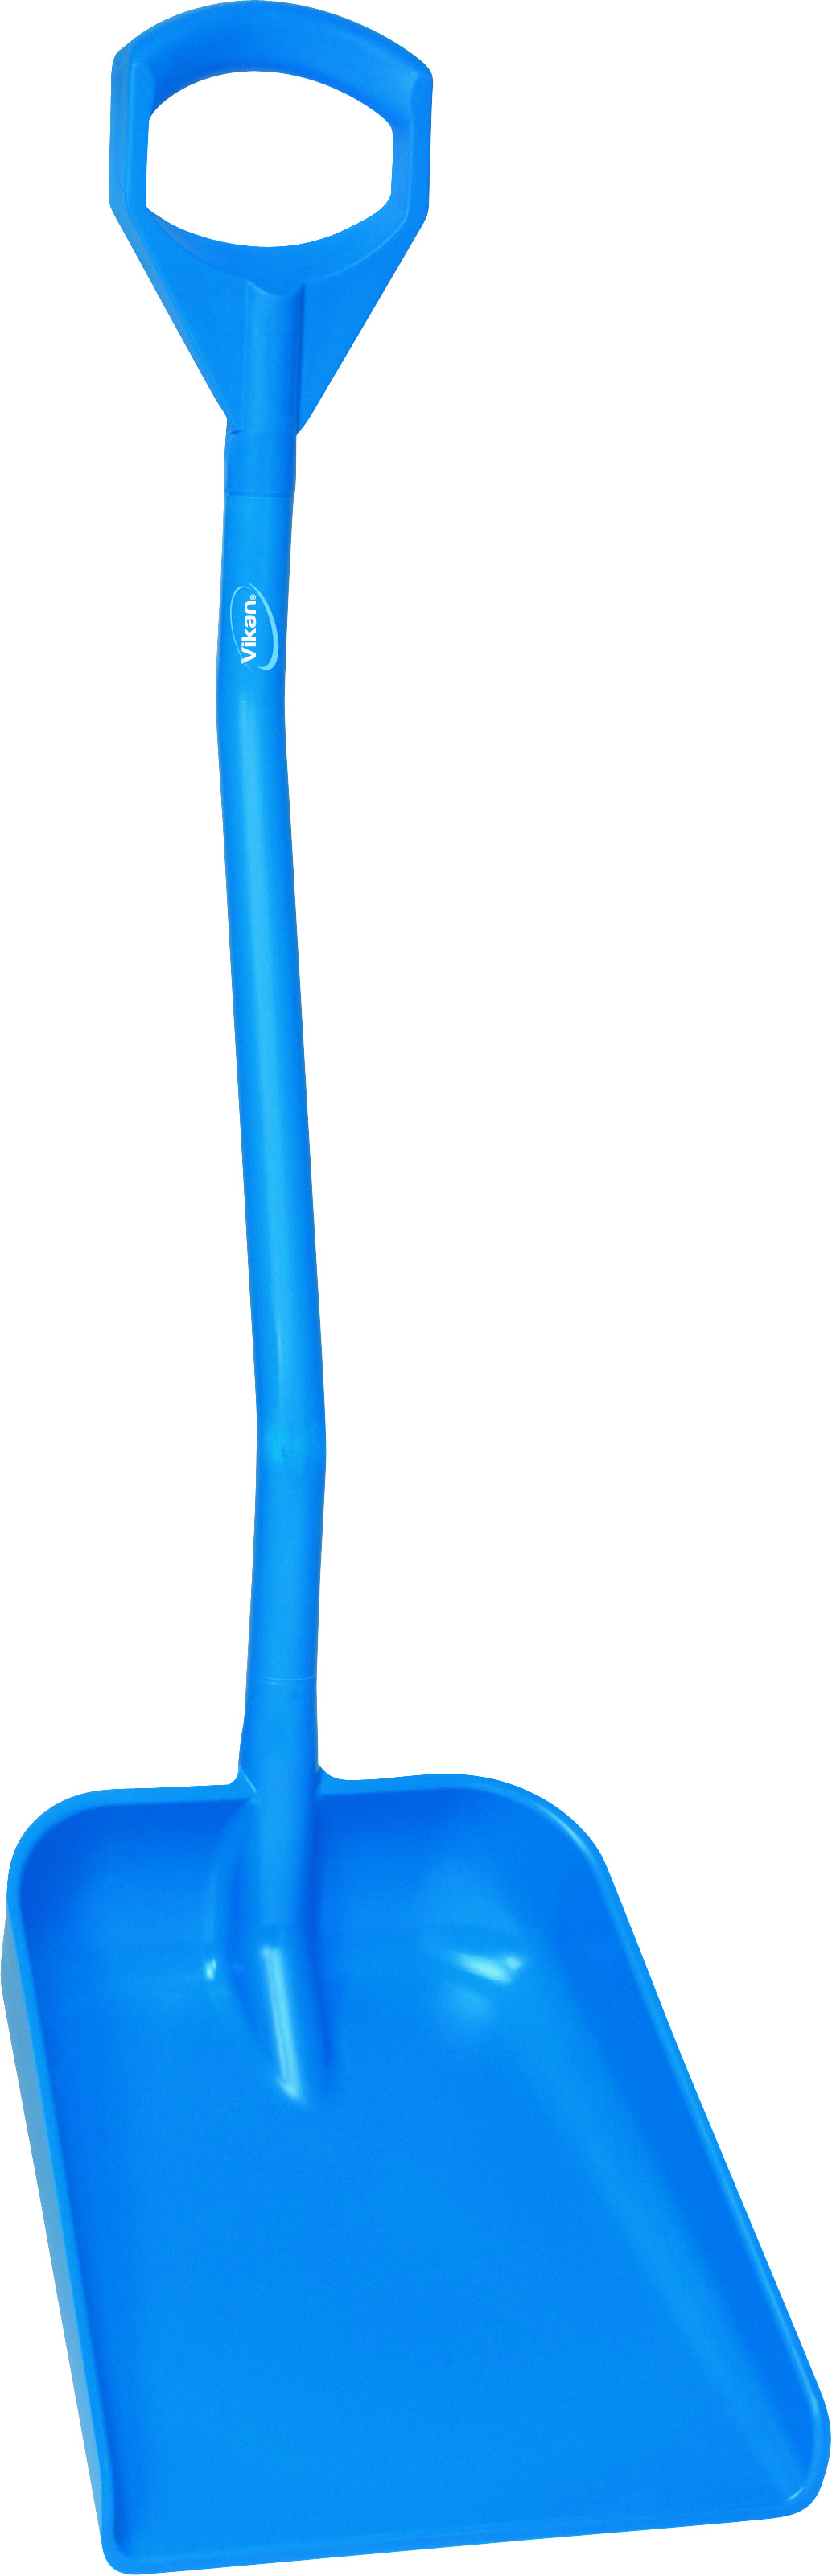 Эргономичная большая лопата с короткой ручкой, 1140 мм